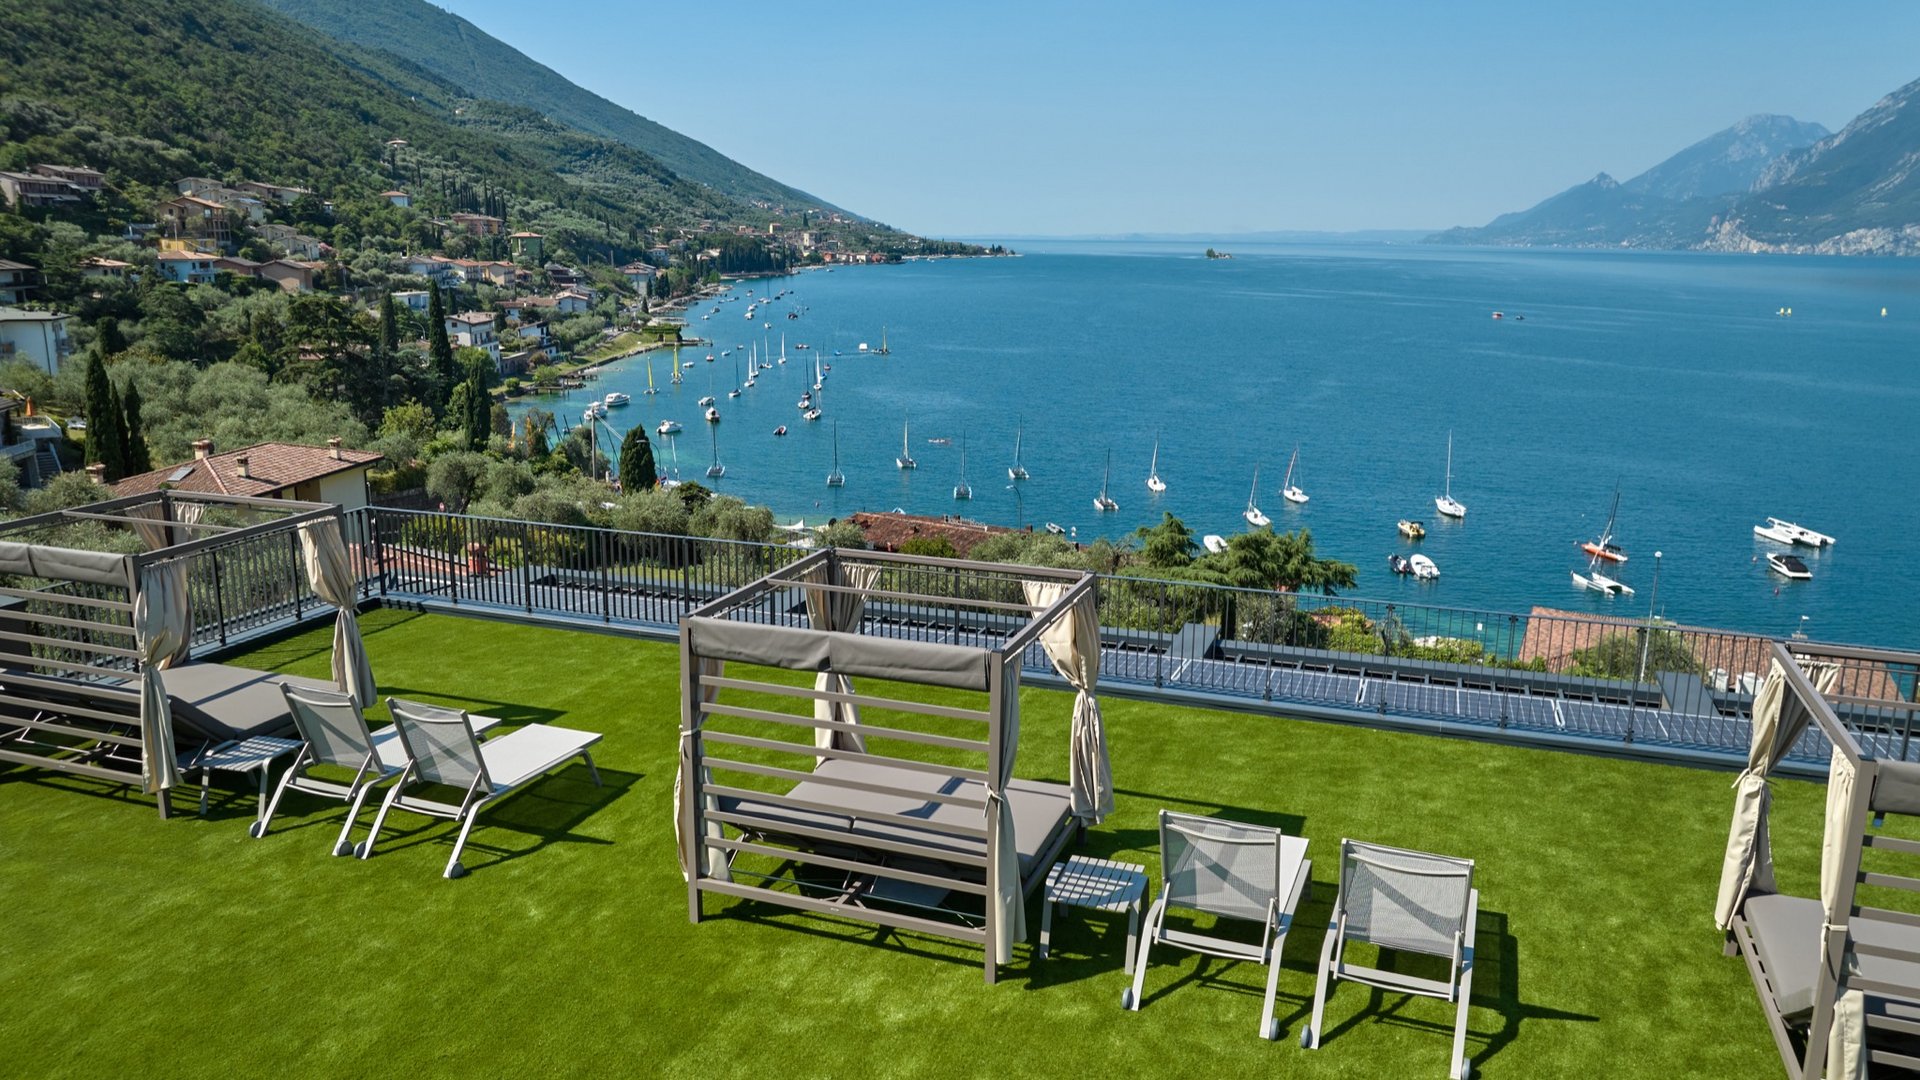 Hotel a Malcesine sul Lago di Garda: un sogno di relax